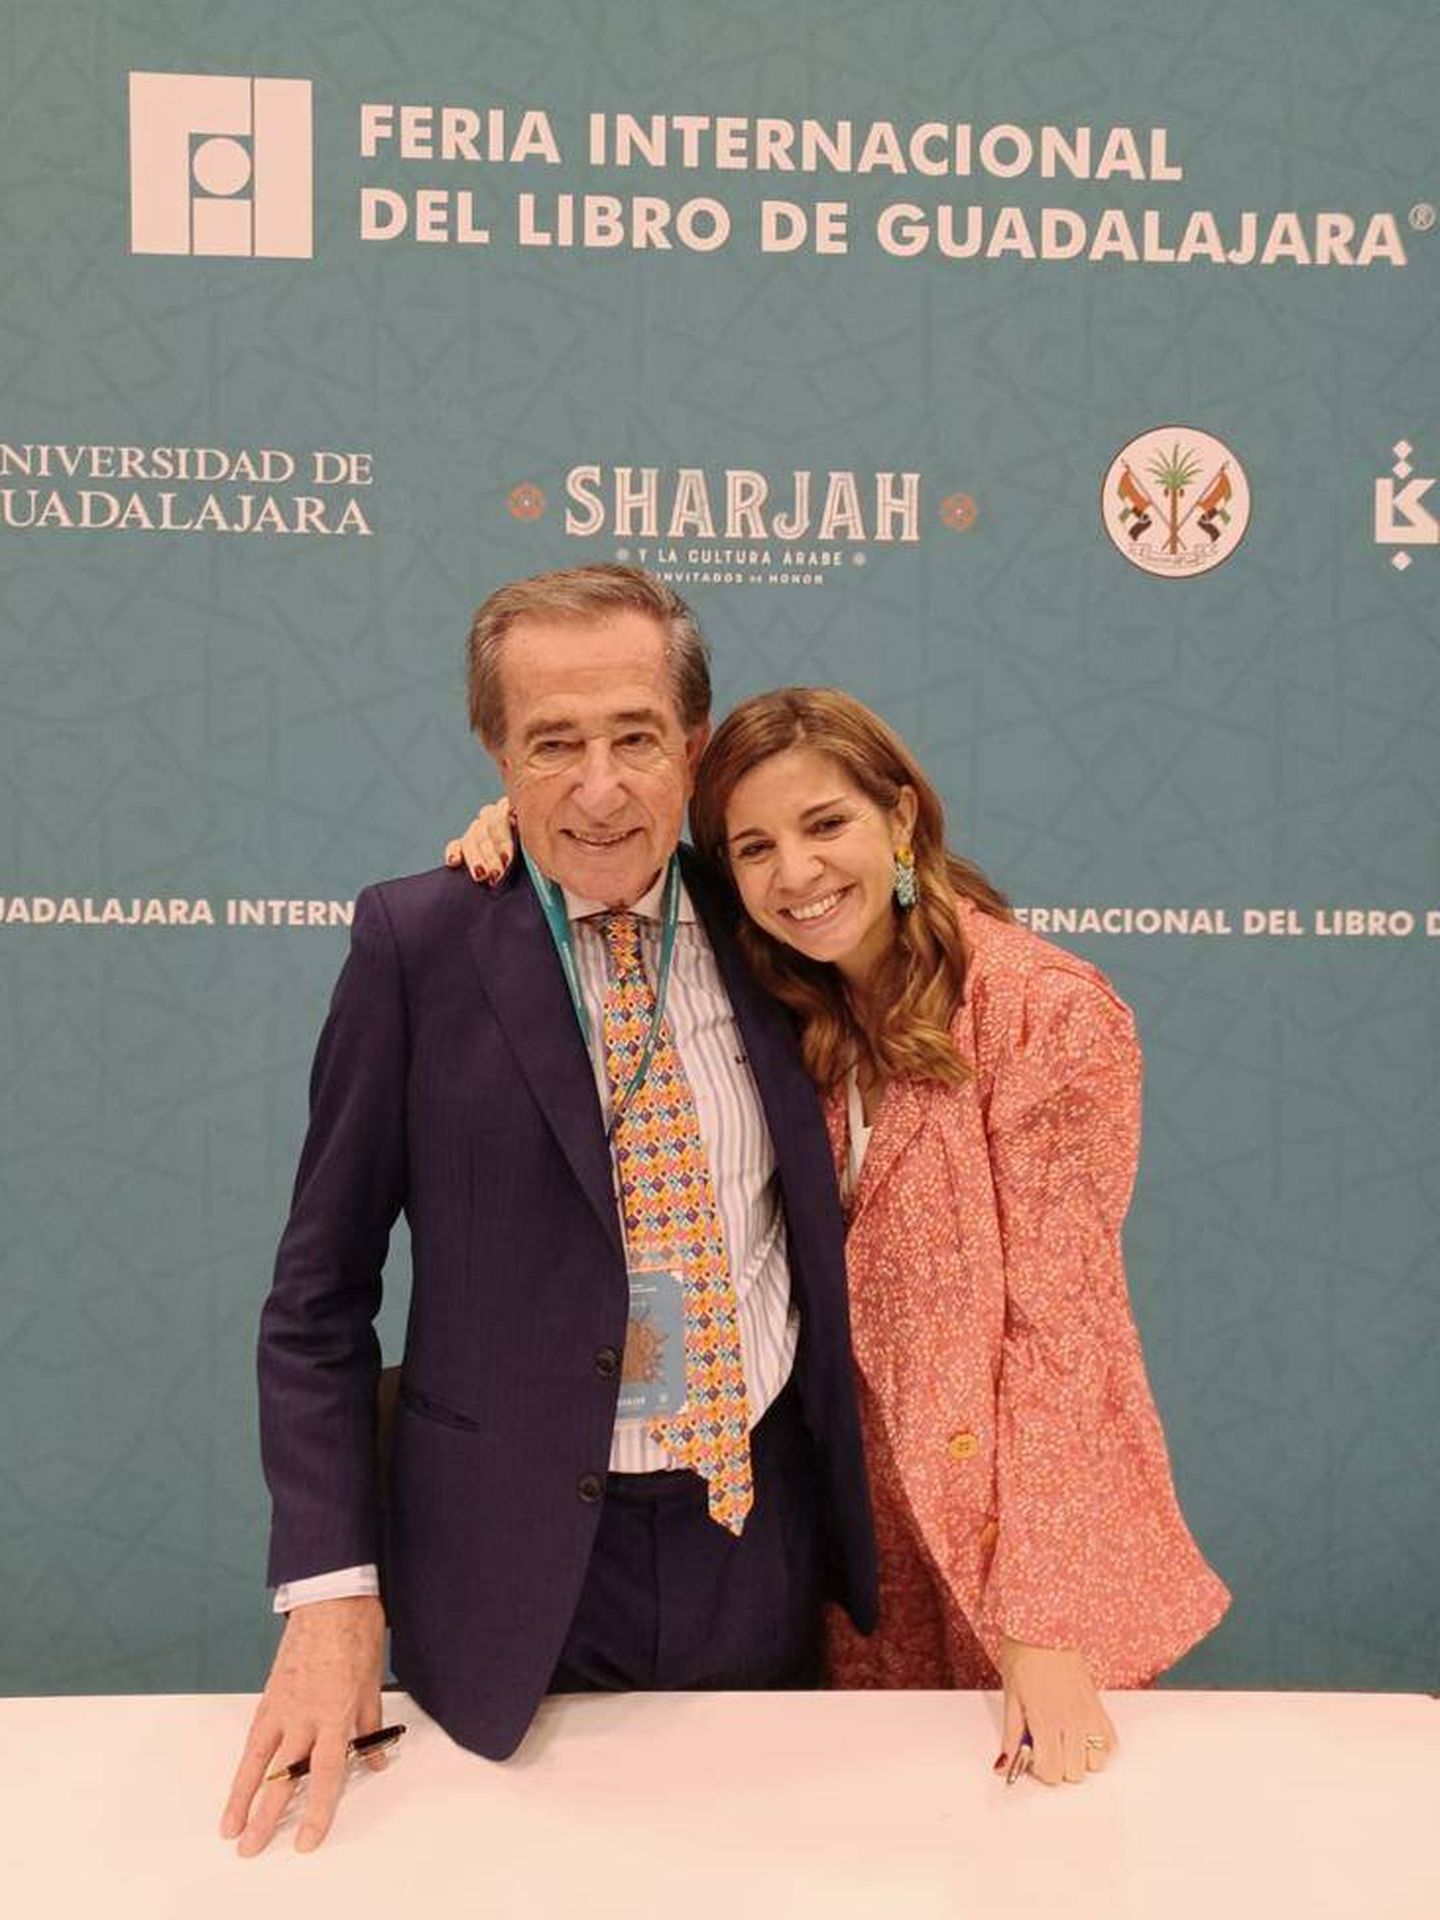 Los doctores Enrique y Marian Rojas, en la Feria Internacional del Libro de Guadalajara. (Foto cedida a El Confidencial)